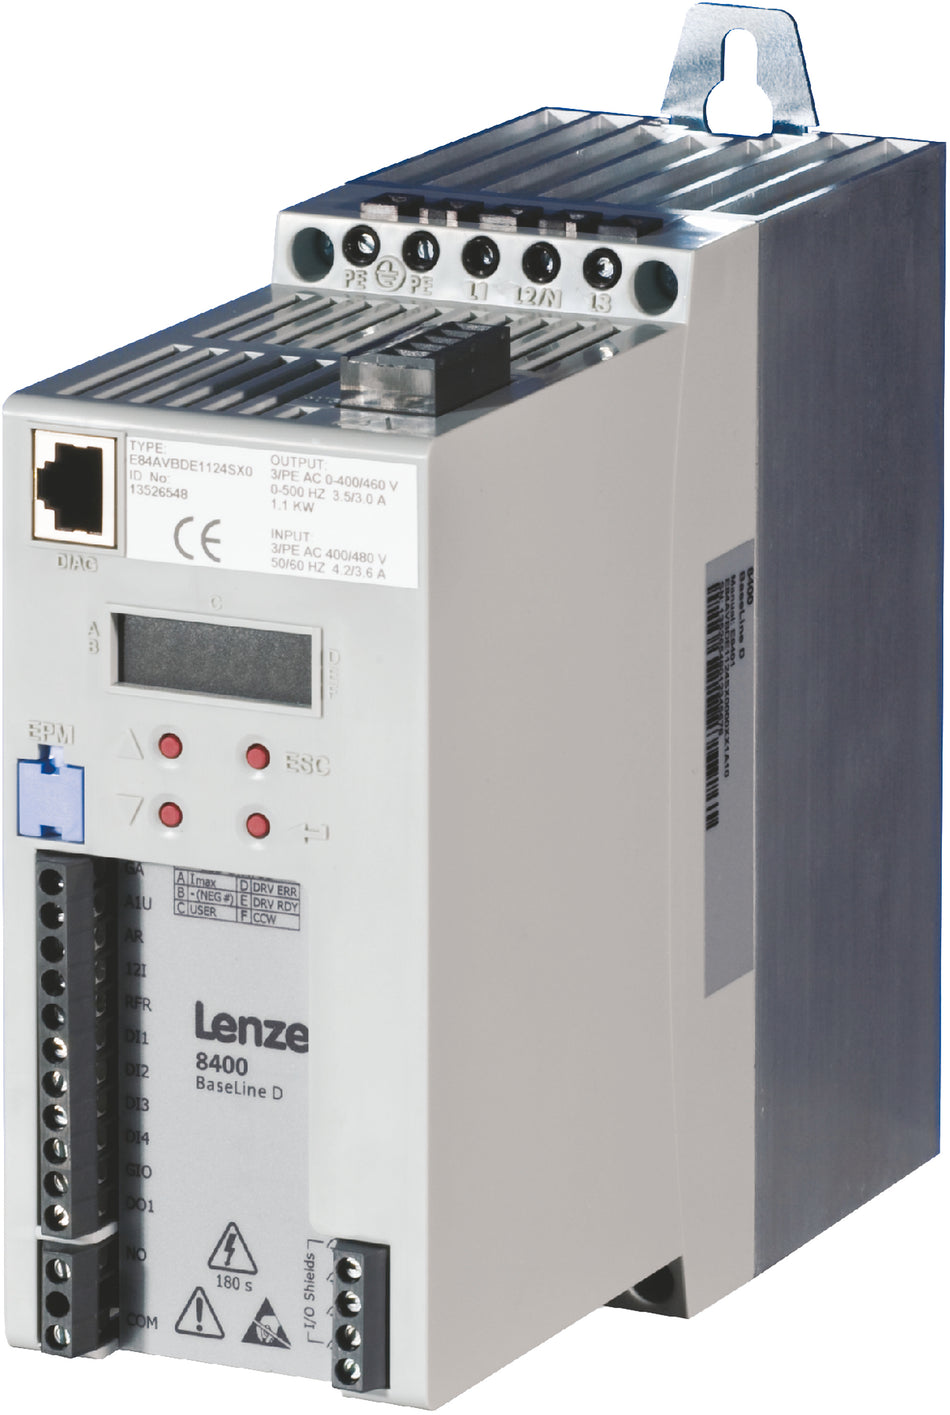 Lenze Inverter Drives 8400 BaseLine - E84AVBDE2222SX0 2.2 kW